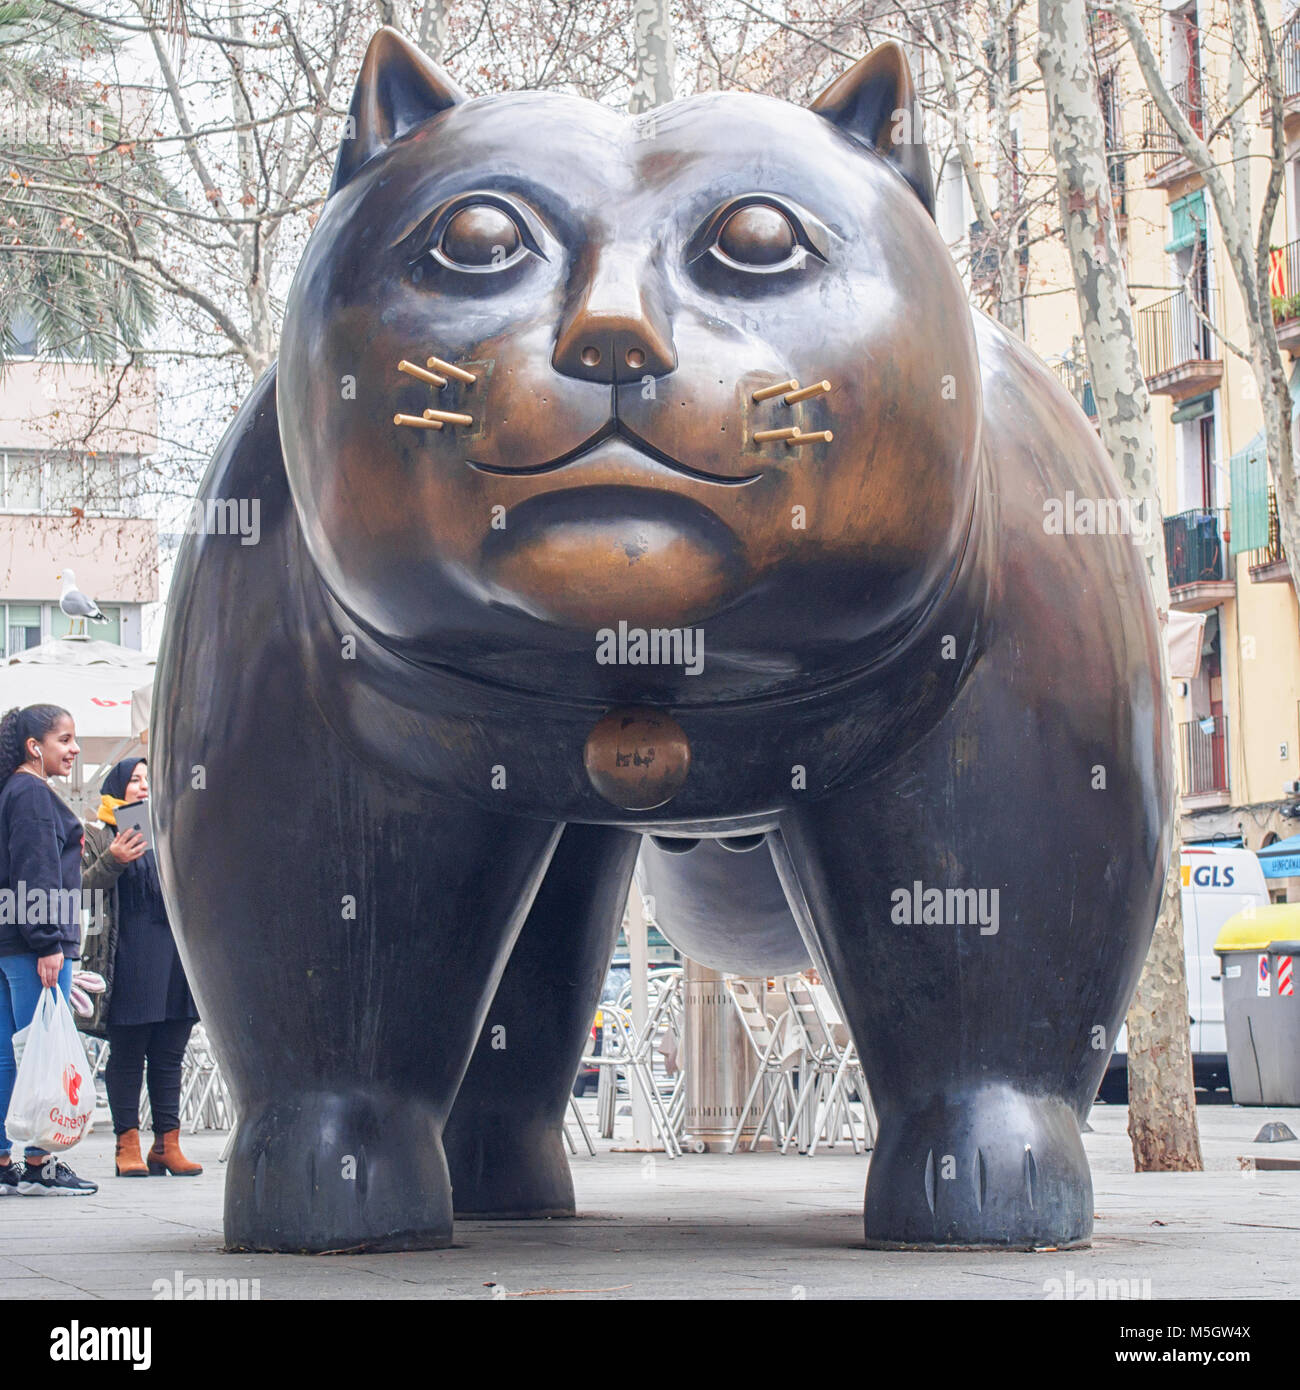 BARCELONA, SPANIEN - 17. FEBRUAR 2018: Skulptur von Fernando Botero "El Gato" ("Die Katze") im Stadtteil Raval Stockfoto